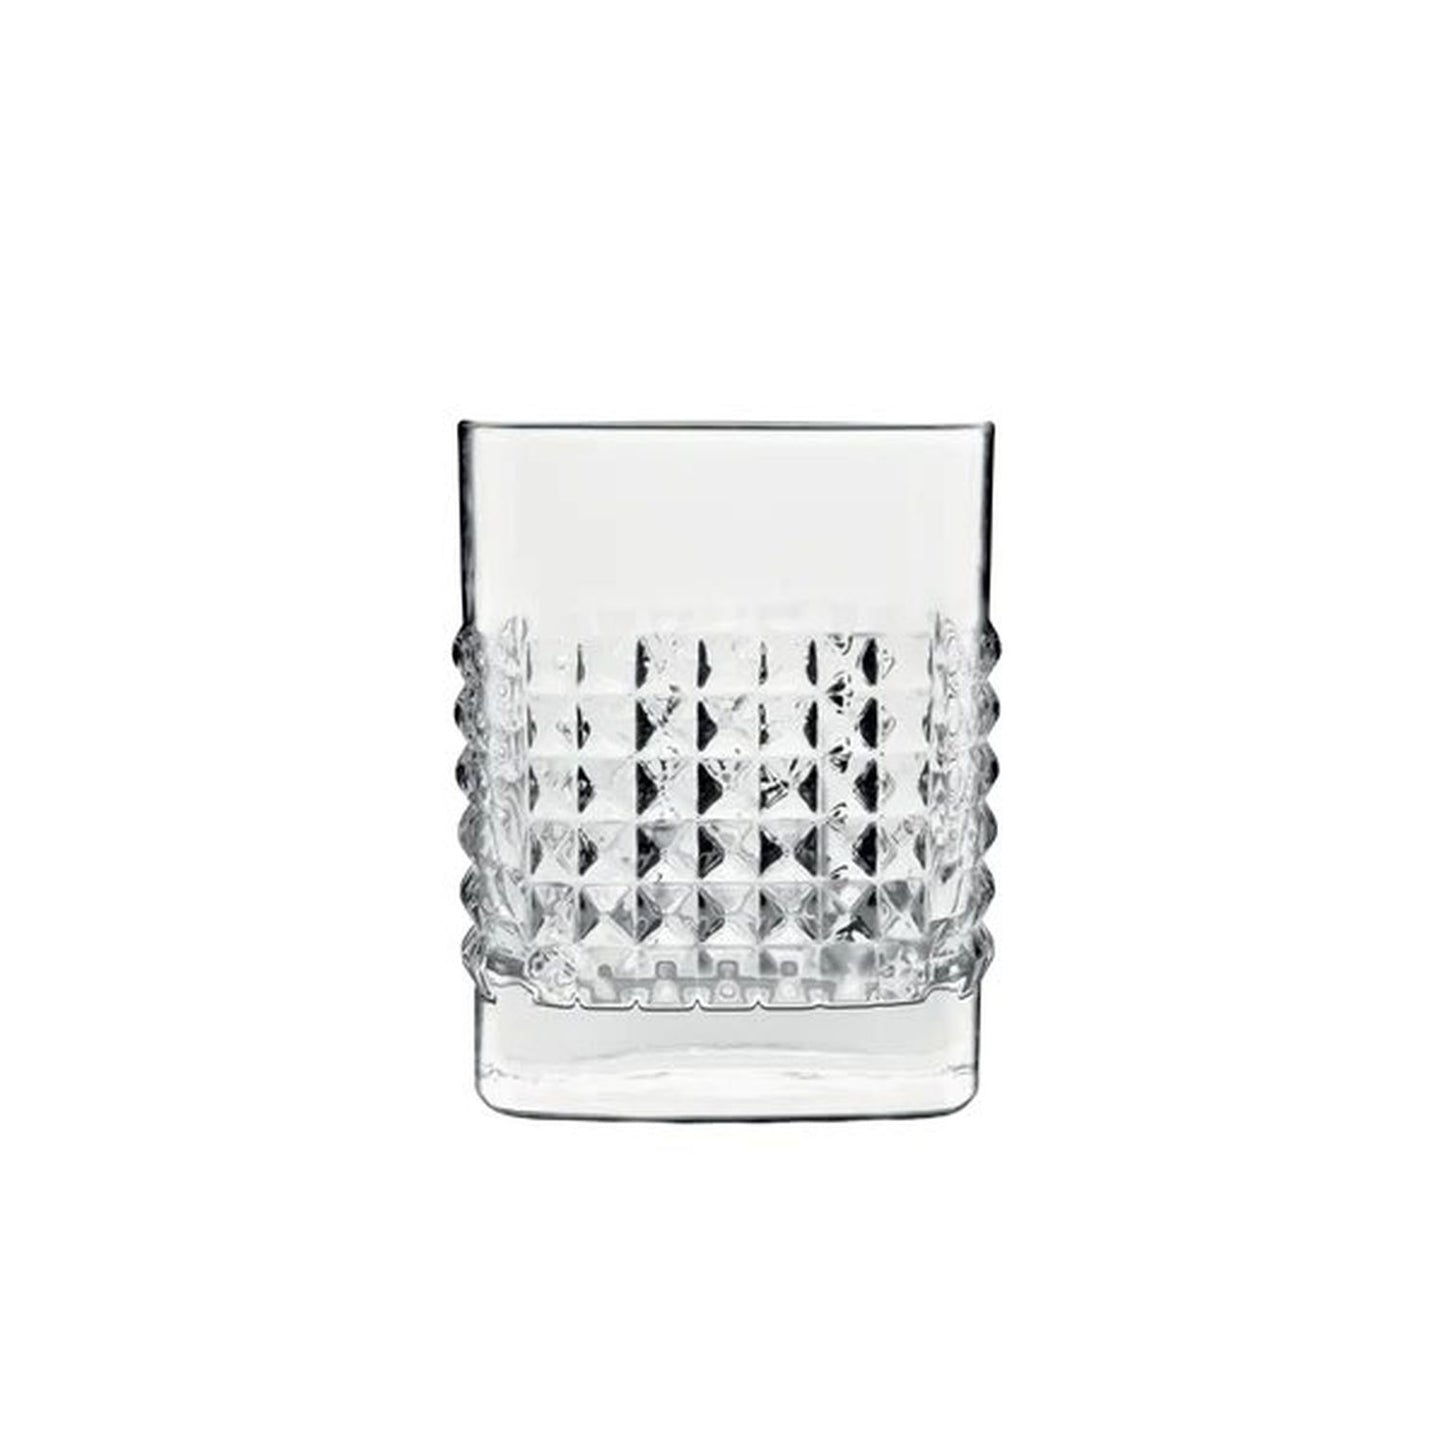 Luigi Bormioli Mixology Elixir Whisky - Liquor - Spirits Set 5-Pcs